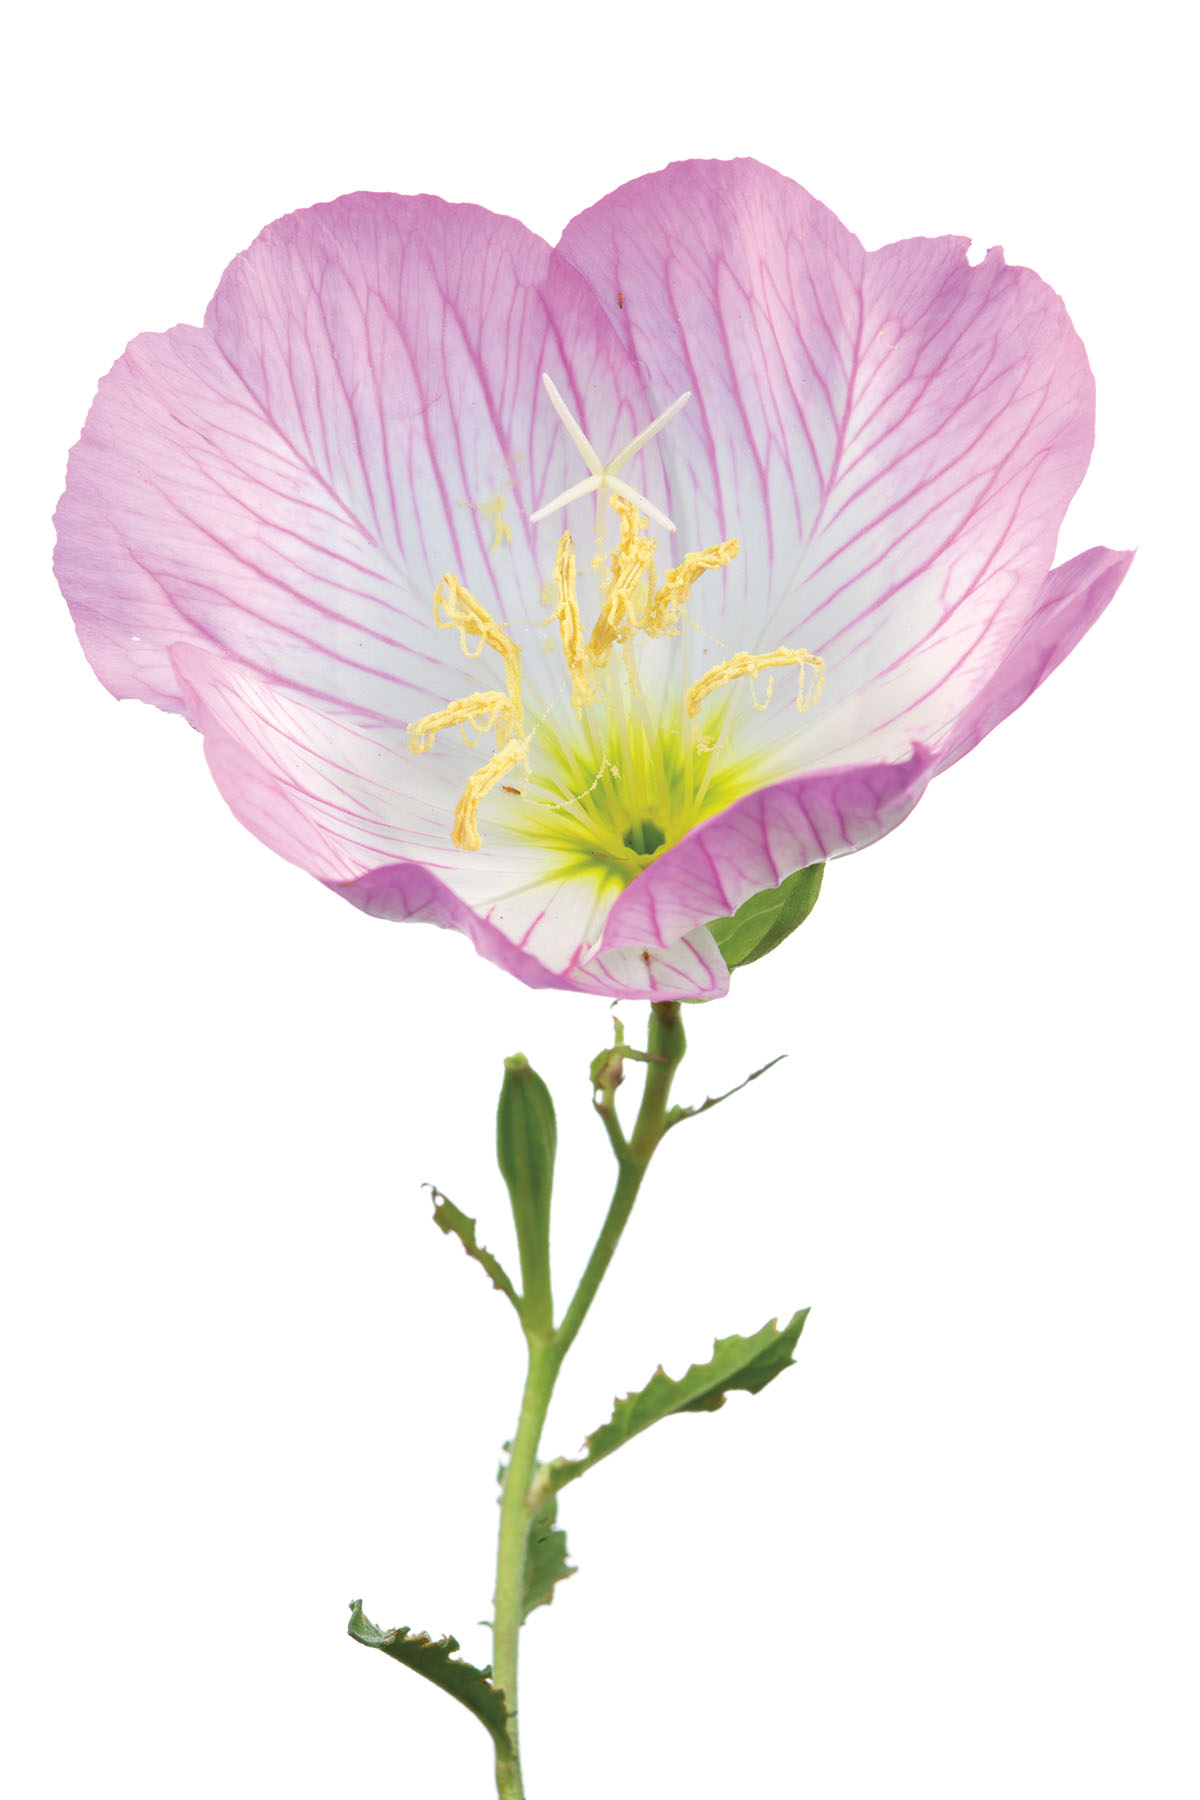 Pink Evening Primrose (Oenothera specious)